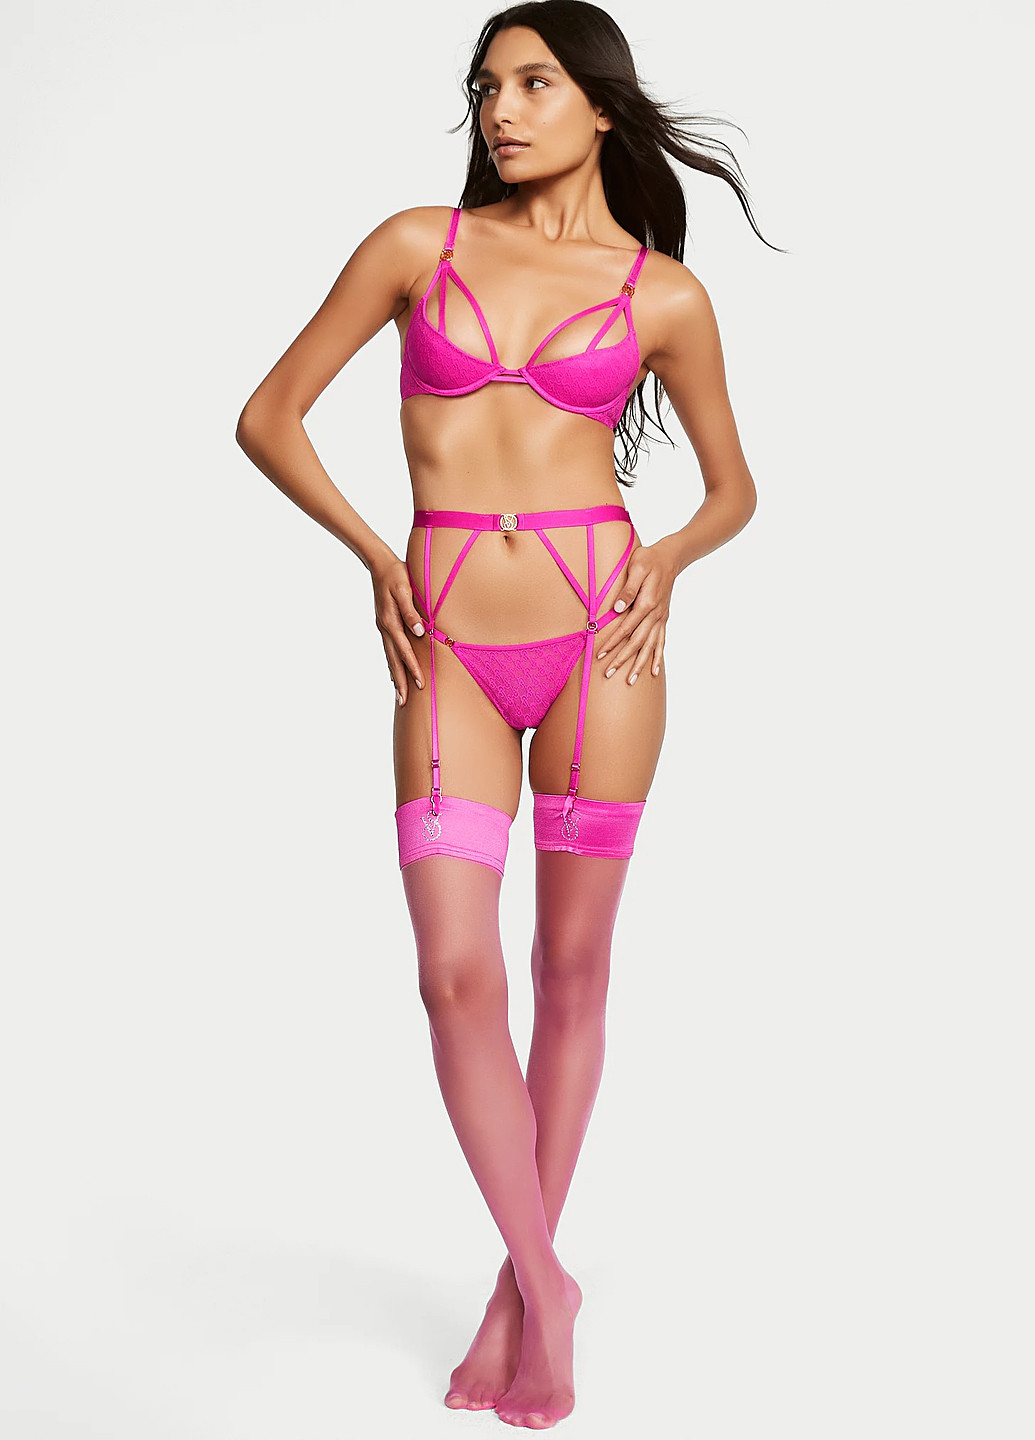 Розовый демисезонный комплект (бюстгальтер, тусики) Victoria's Secret